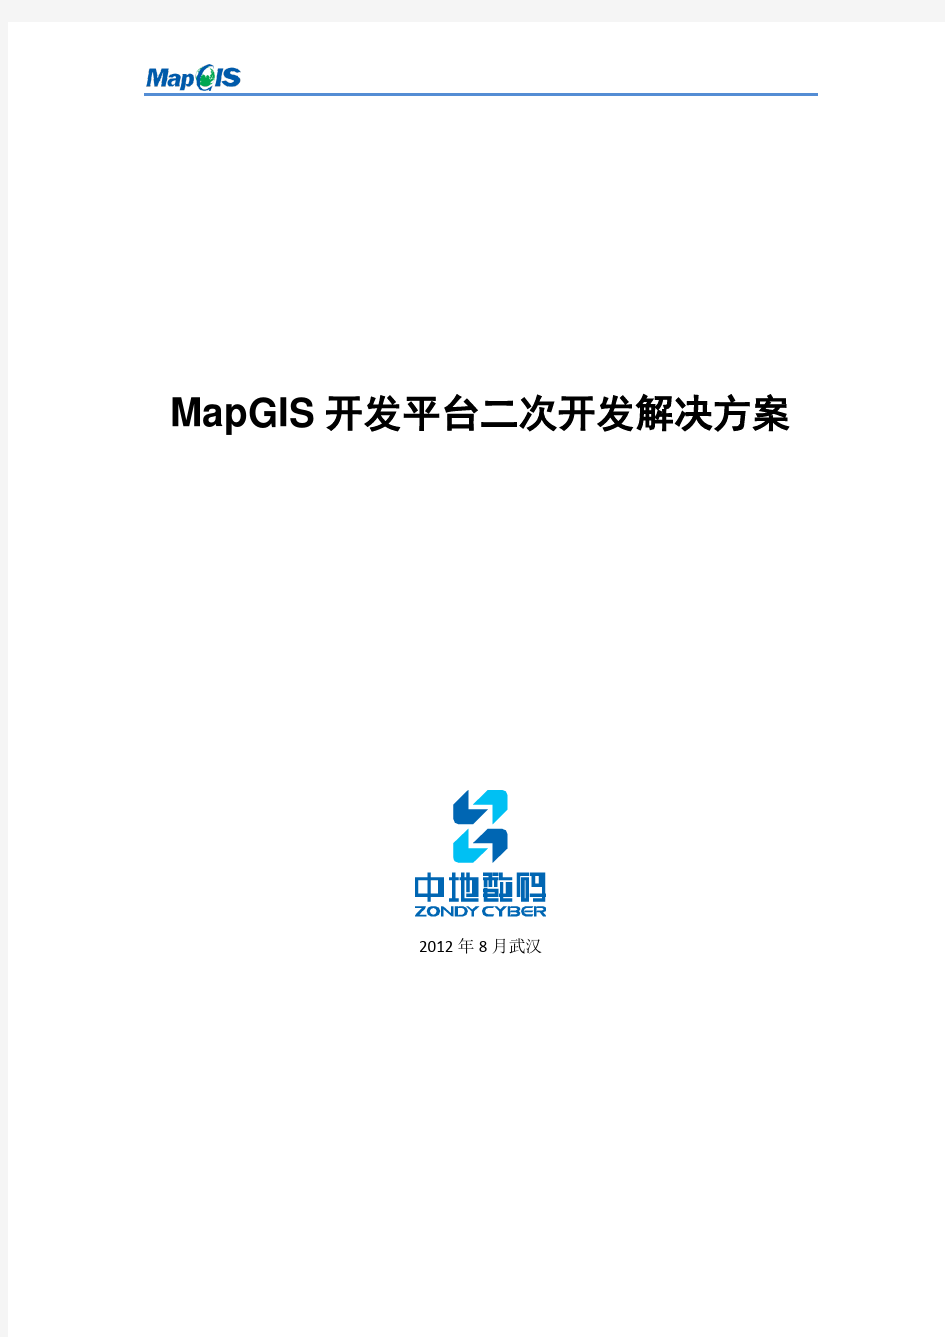 MapGIS开发平台二次开发